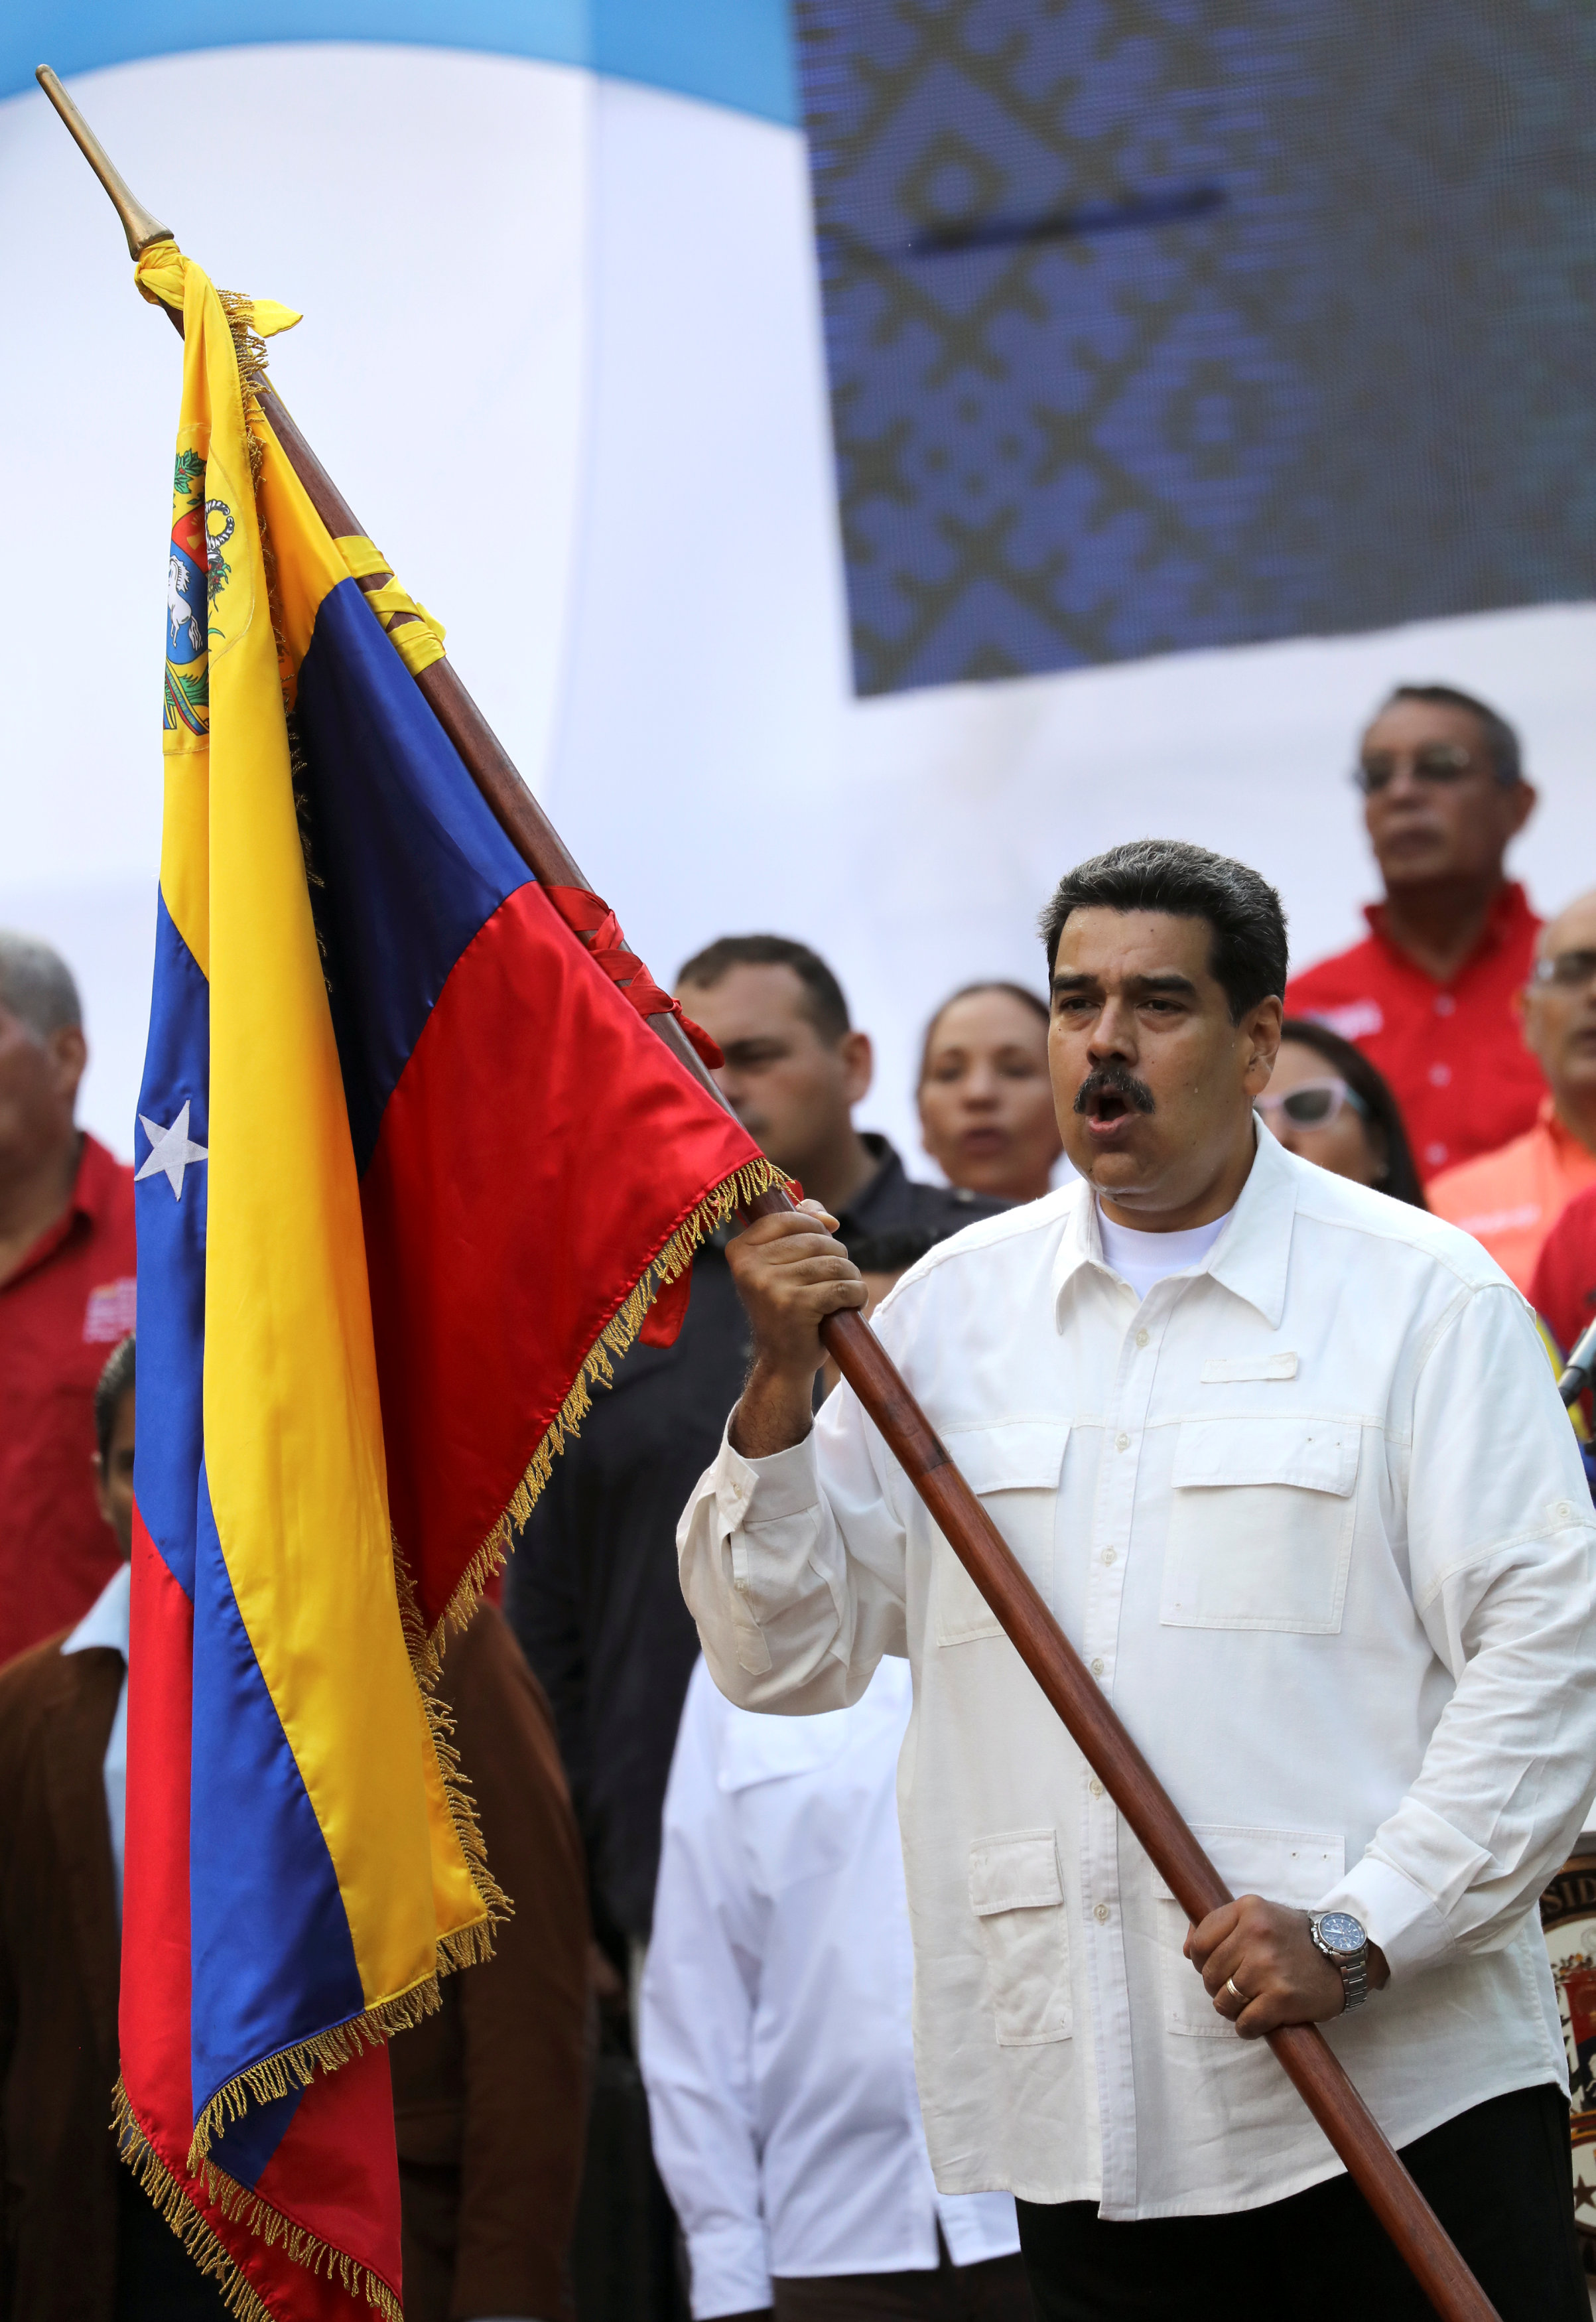 الرئيس الفنزويلى يرفع علم بلاده أمام أنصاره